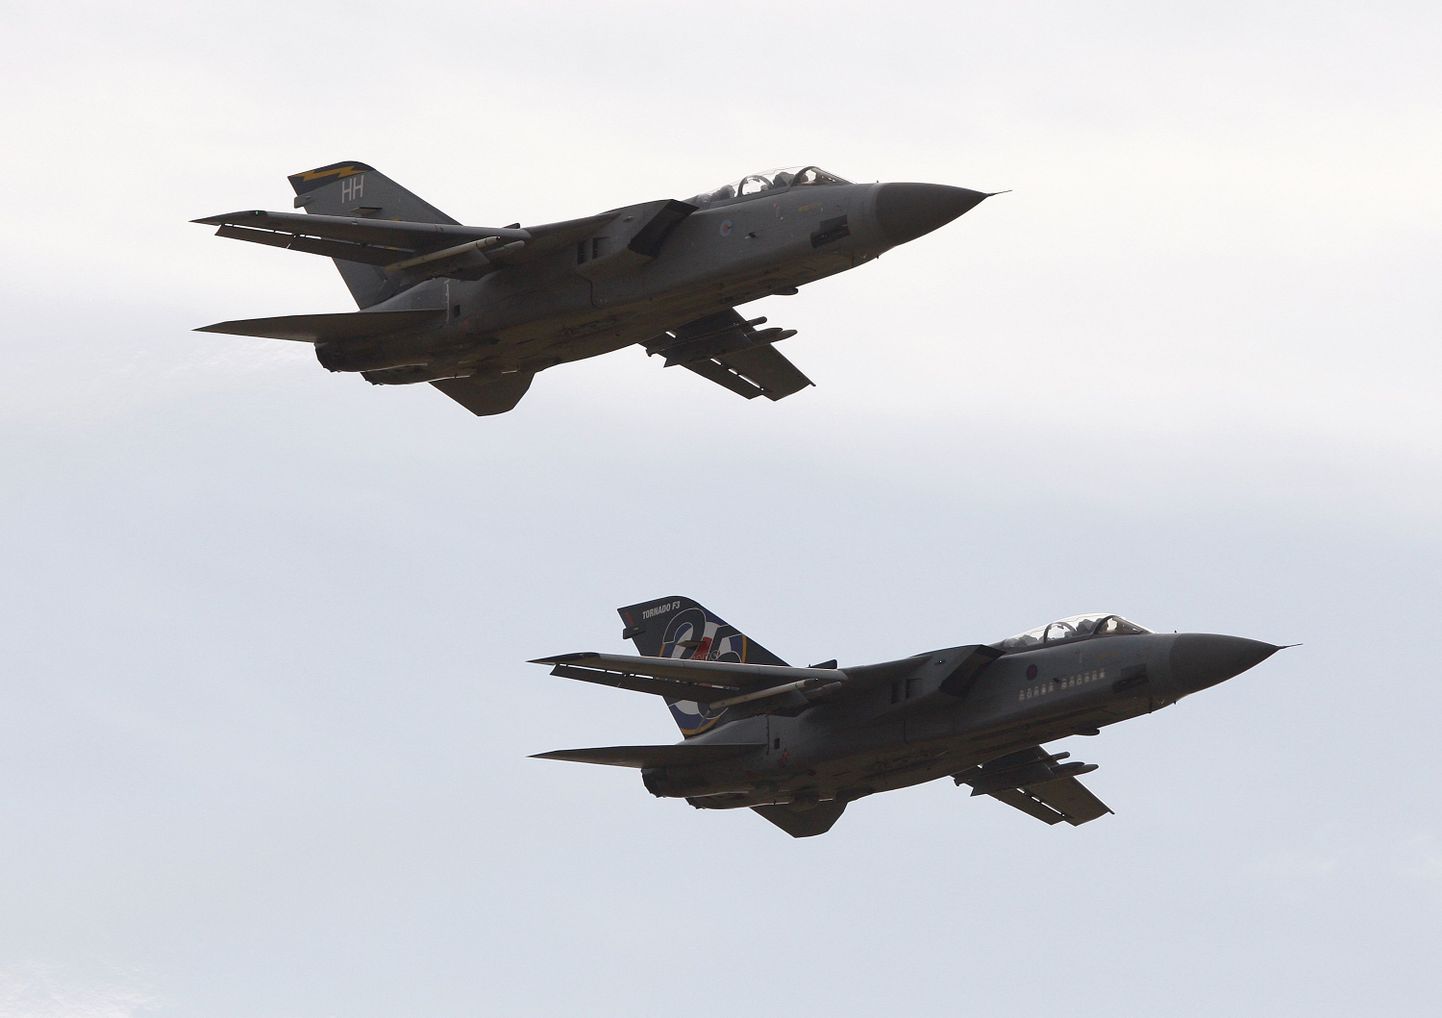 Briti õhujõududele kuuluvad Tornado F3 lennukid.